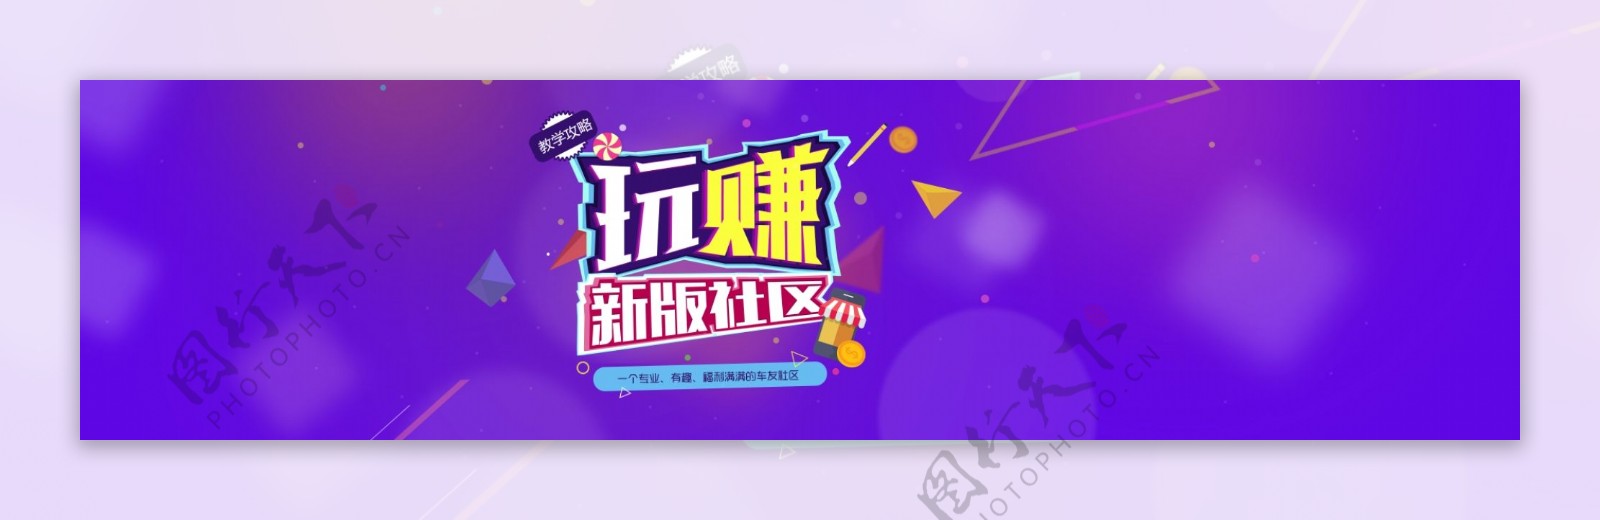 紫色模糊梦幻活动节日背景banner